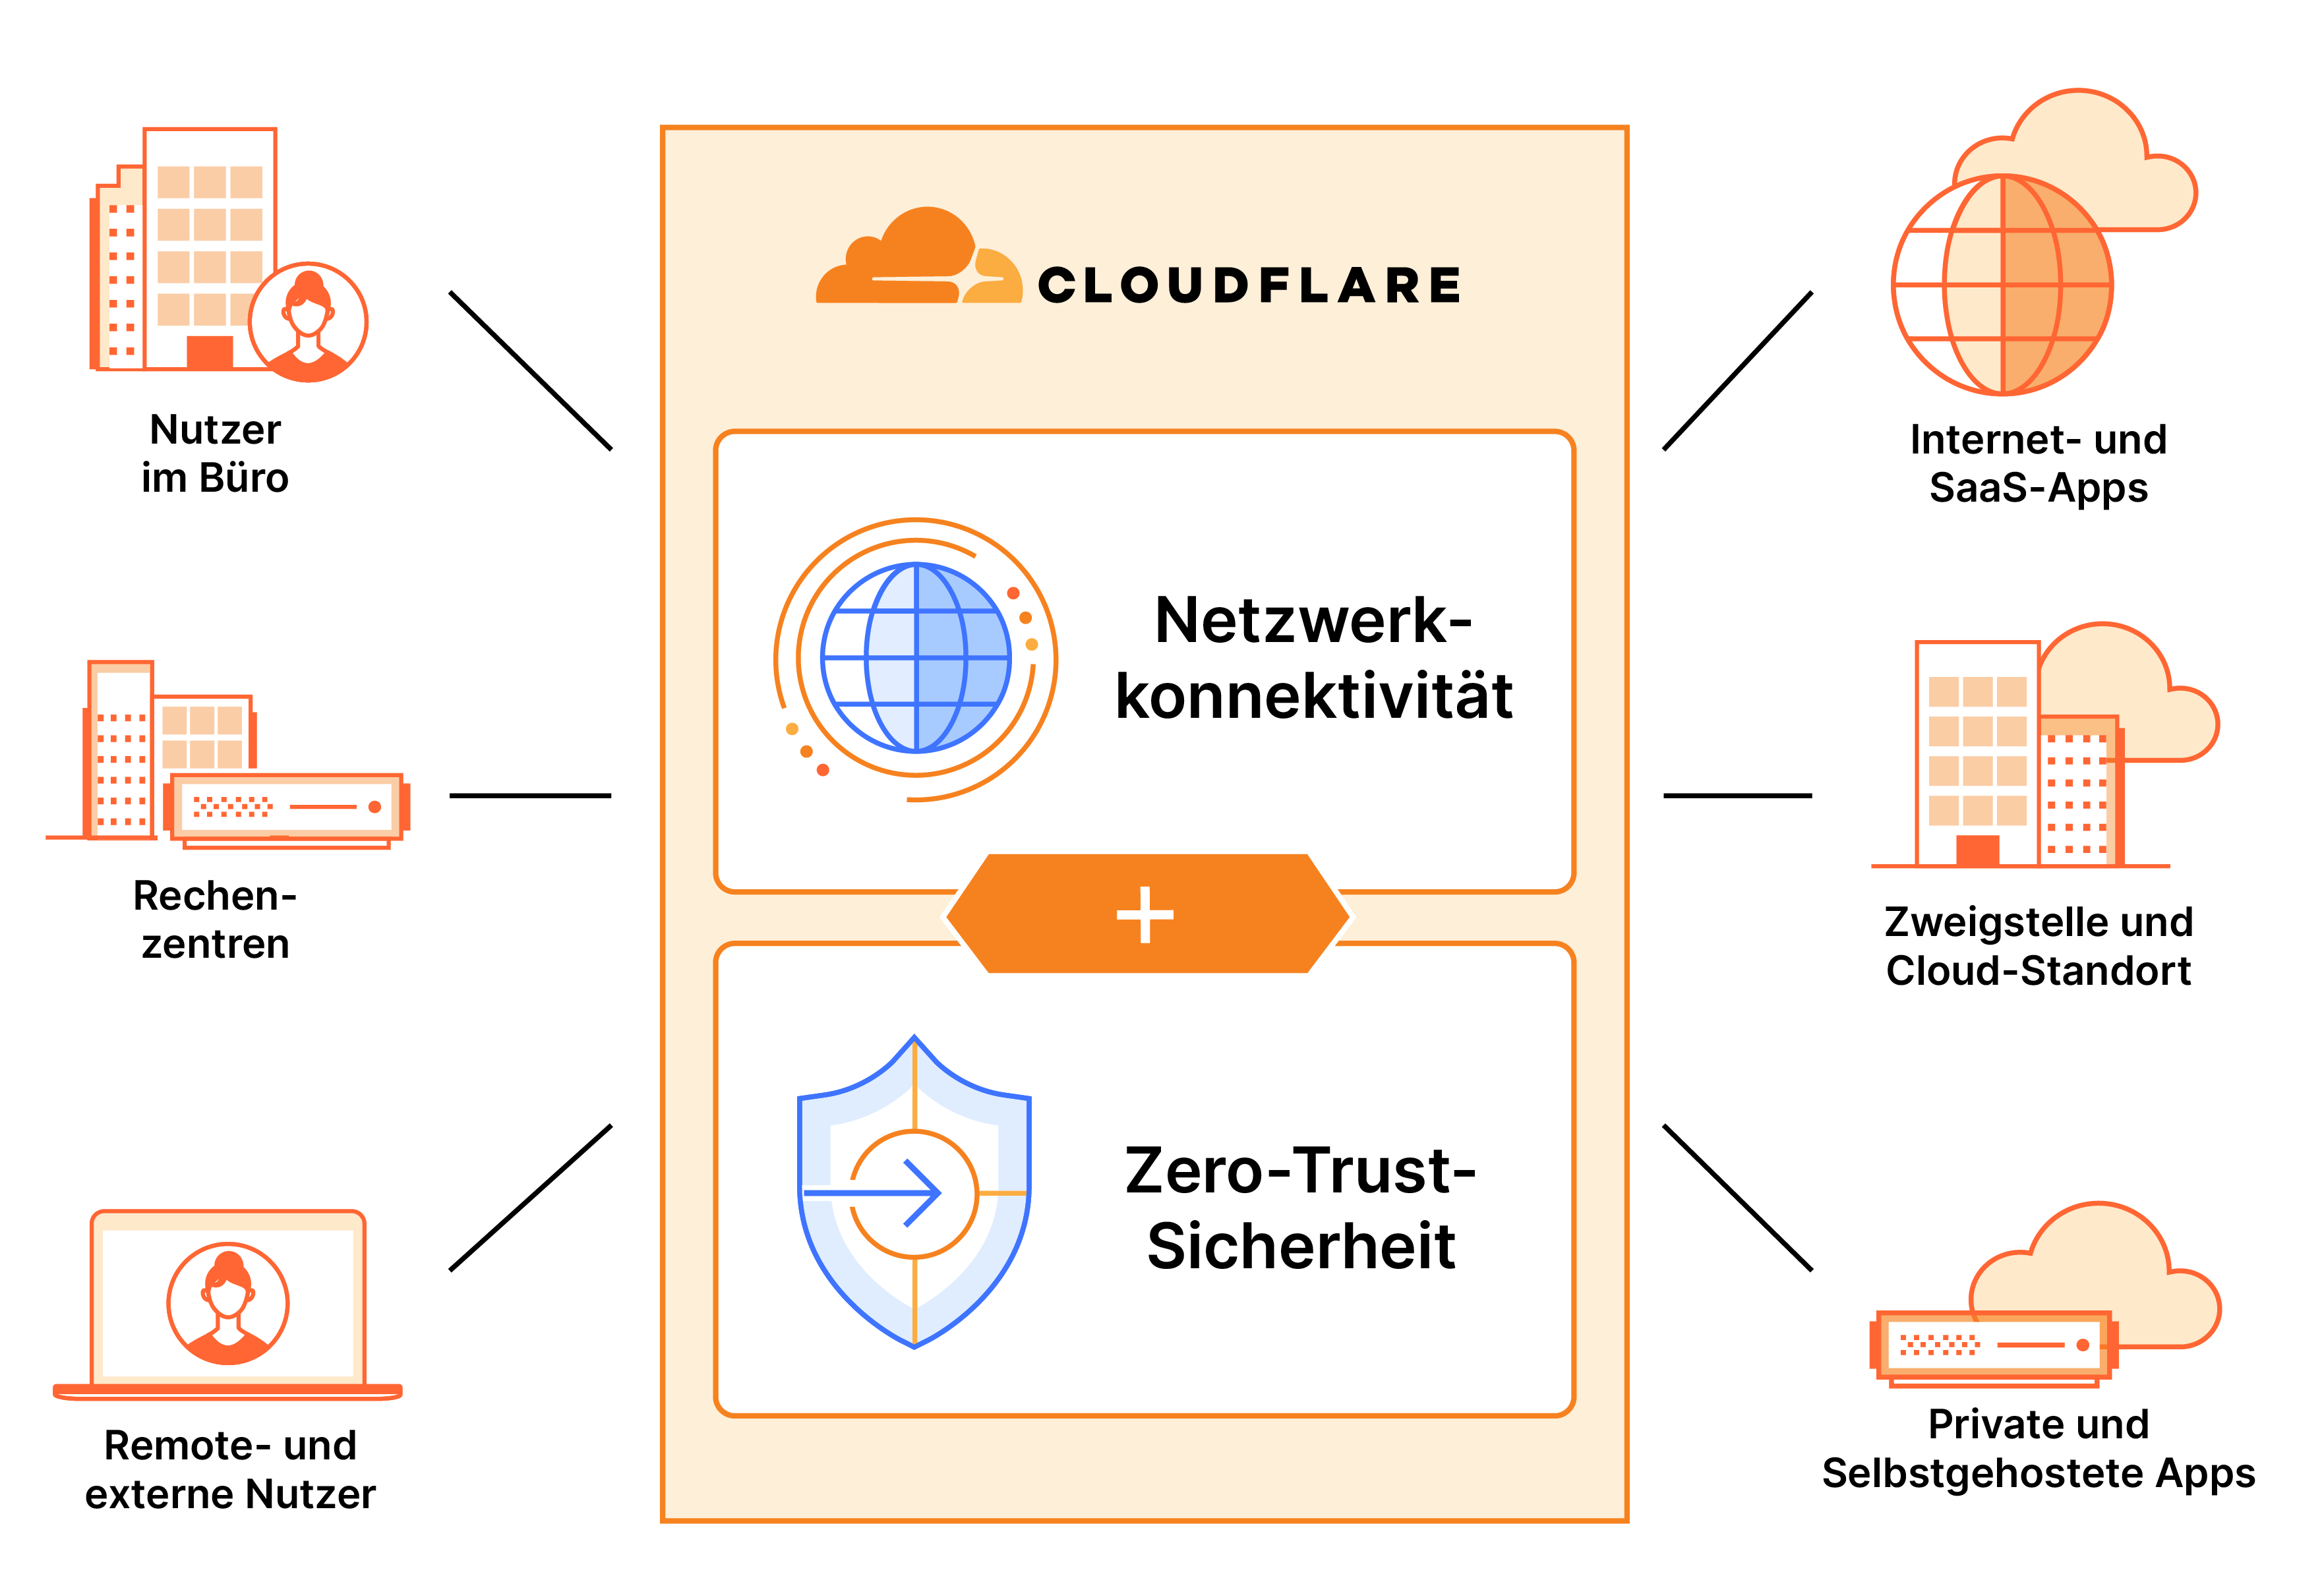 SASE-Architektur kombiniert Zero-Trust-Sicherheit und Netzwerkdienste